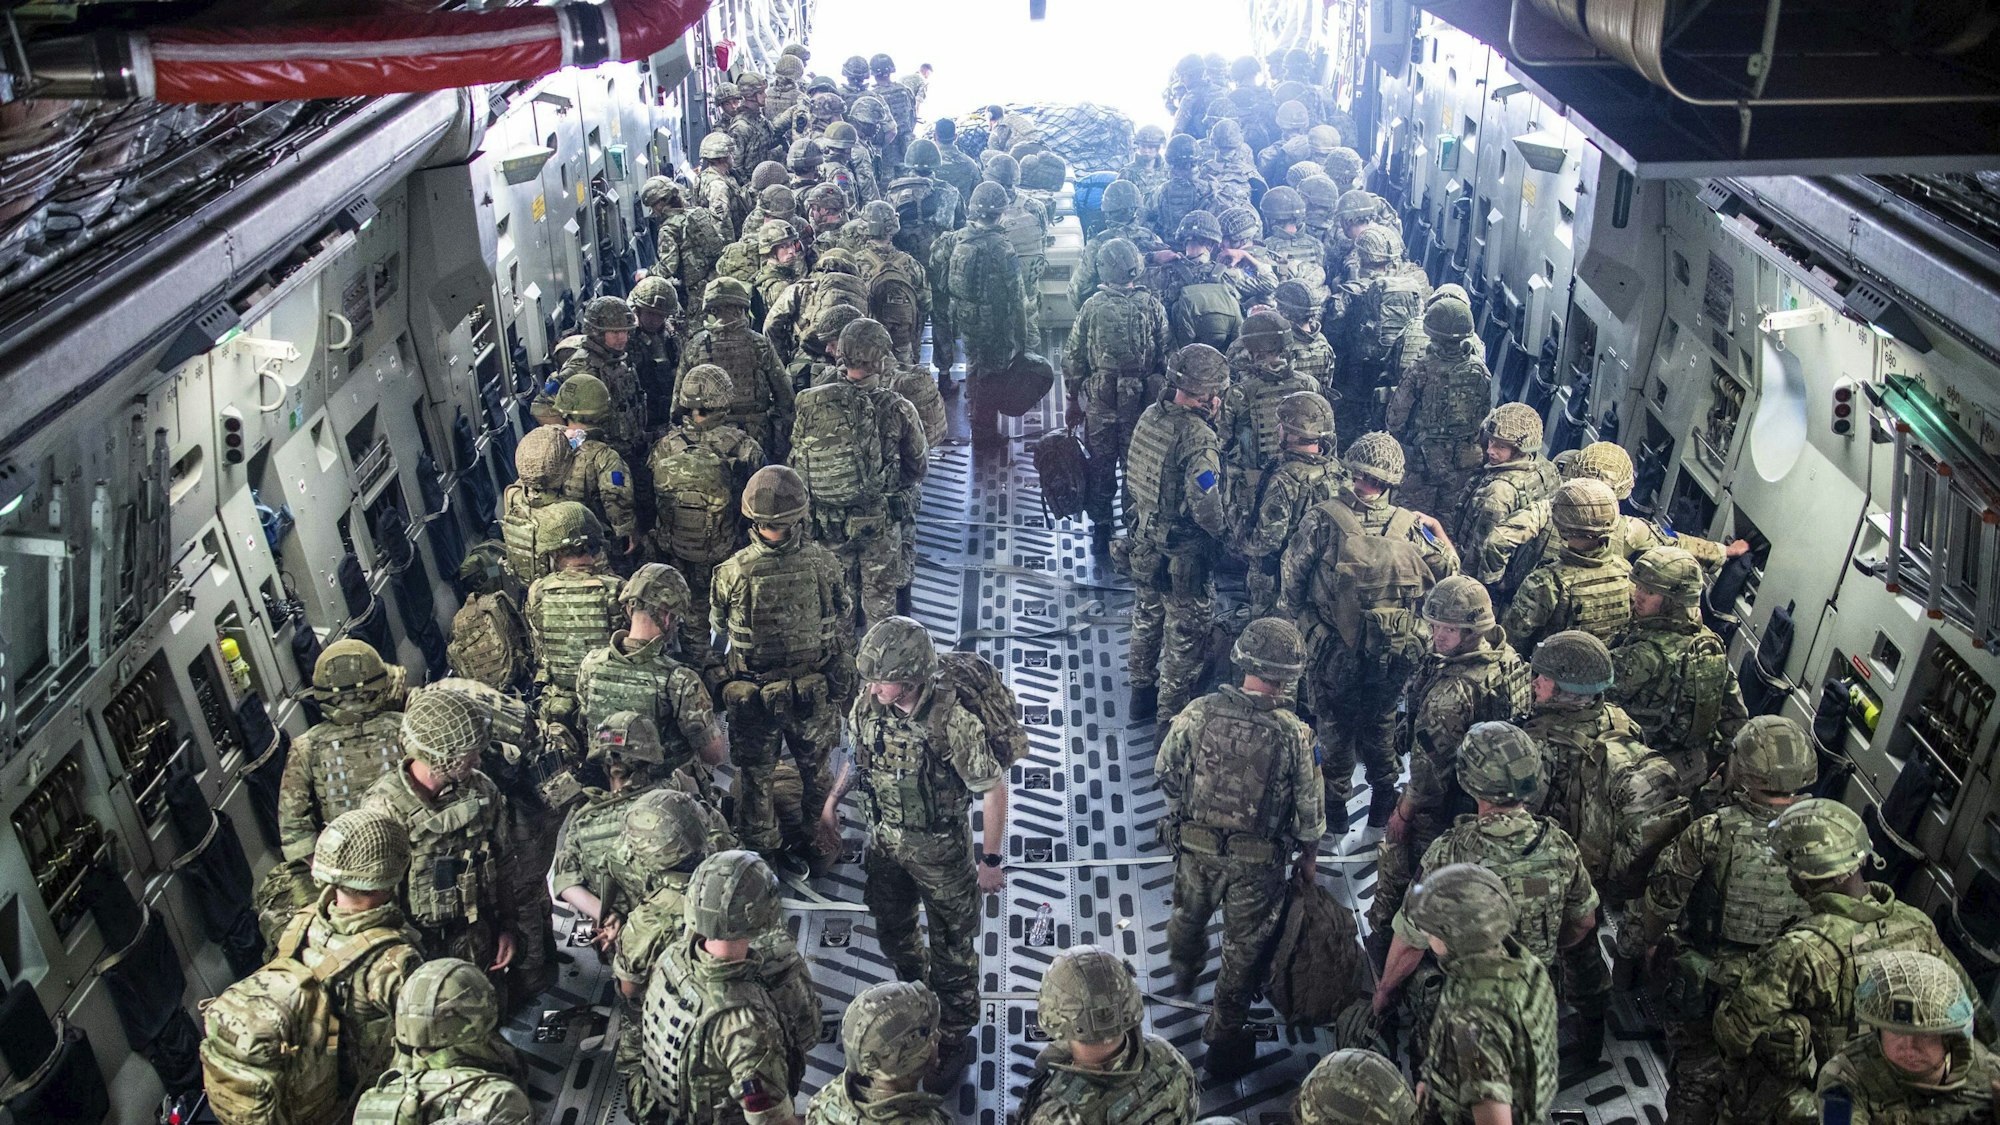 Britische Soldaten kommen in Kabul an. Die Soldaten sind Teil einer 600-köpfigen Truppe zur Assistenz der Operation „Pitting“ in Afghanistan. Ziel ist es, britische Staatsangehörige und Afghanen, die mit Großbritannien zusammengearbeitet hätten, aufgrund der aktuellen Taliban-Offensive außer Landes zu bringen.